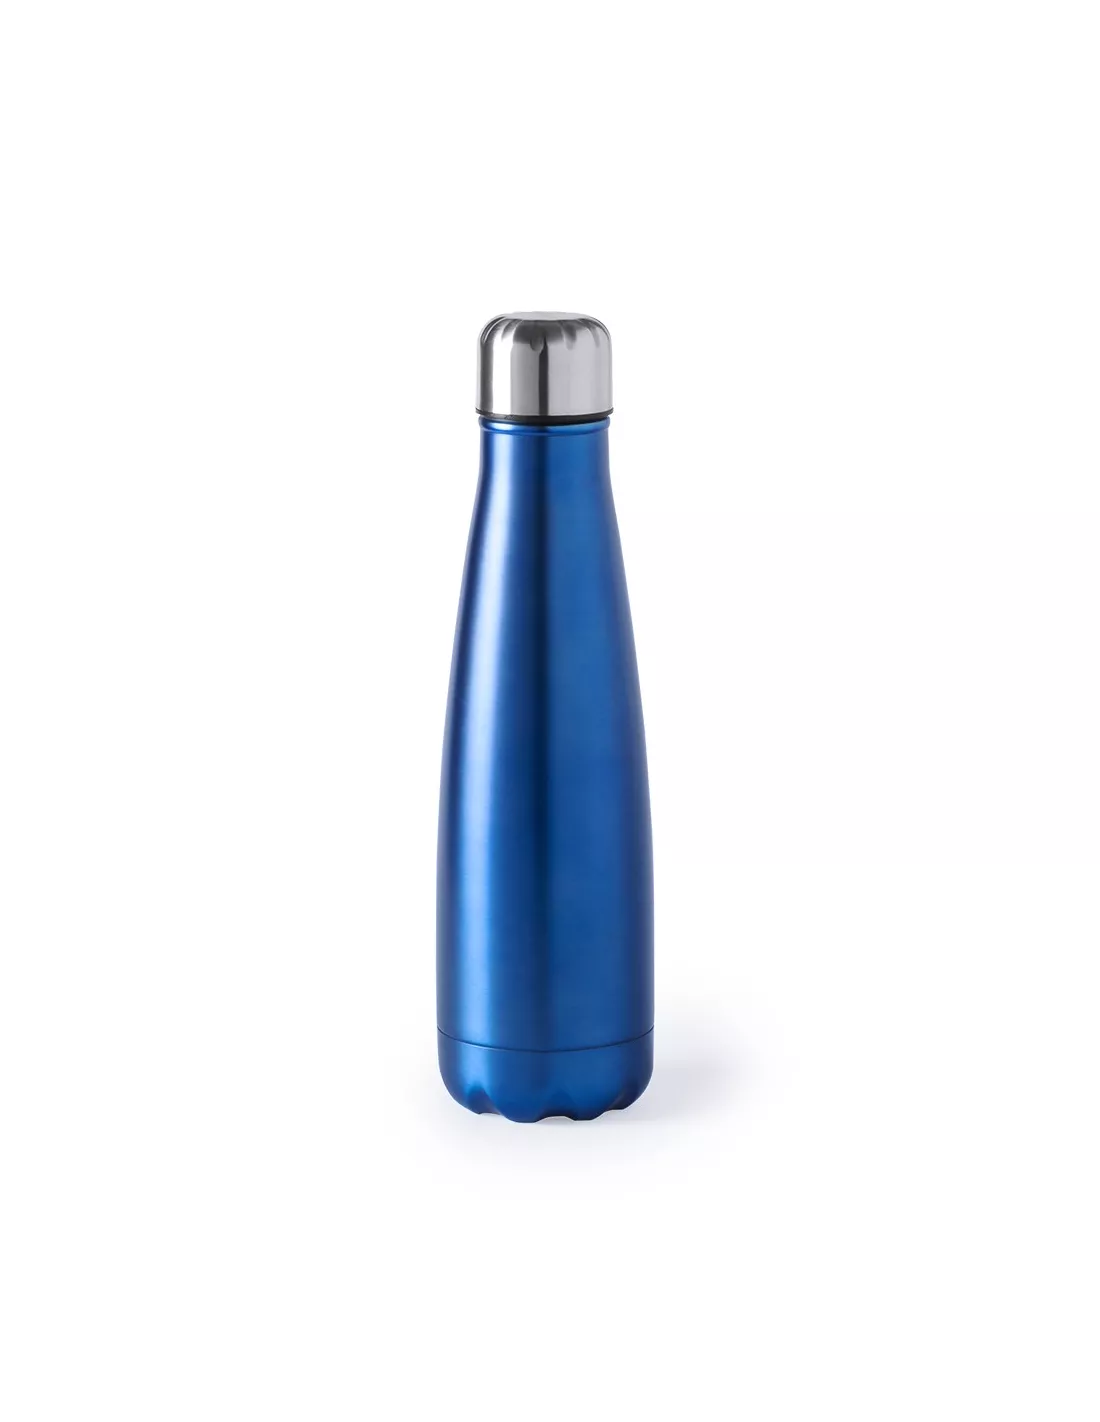 Botellas Personalizadas para Agua de Acero Inoxidable